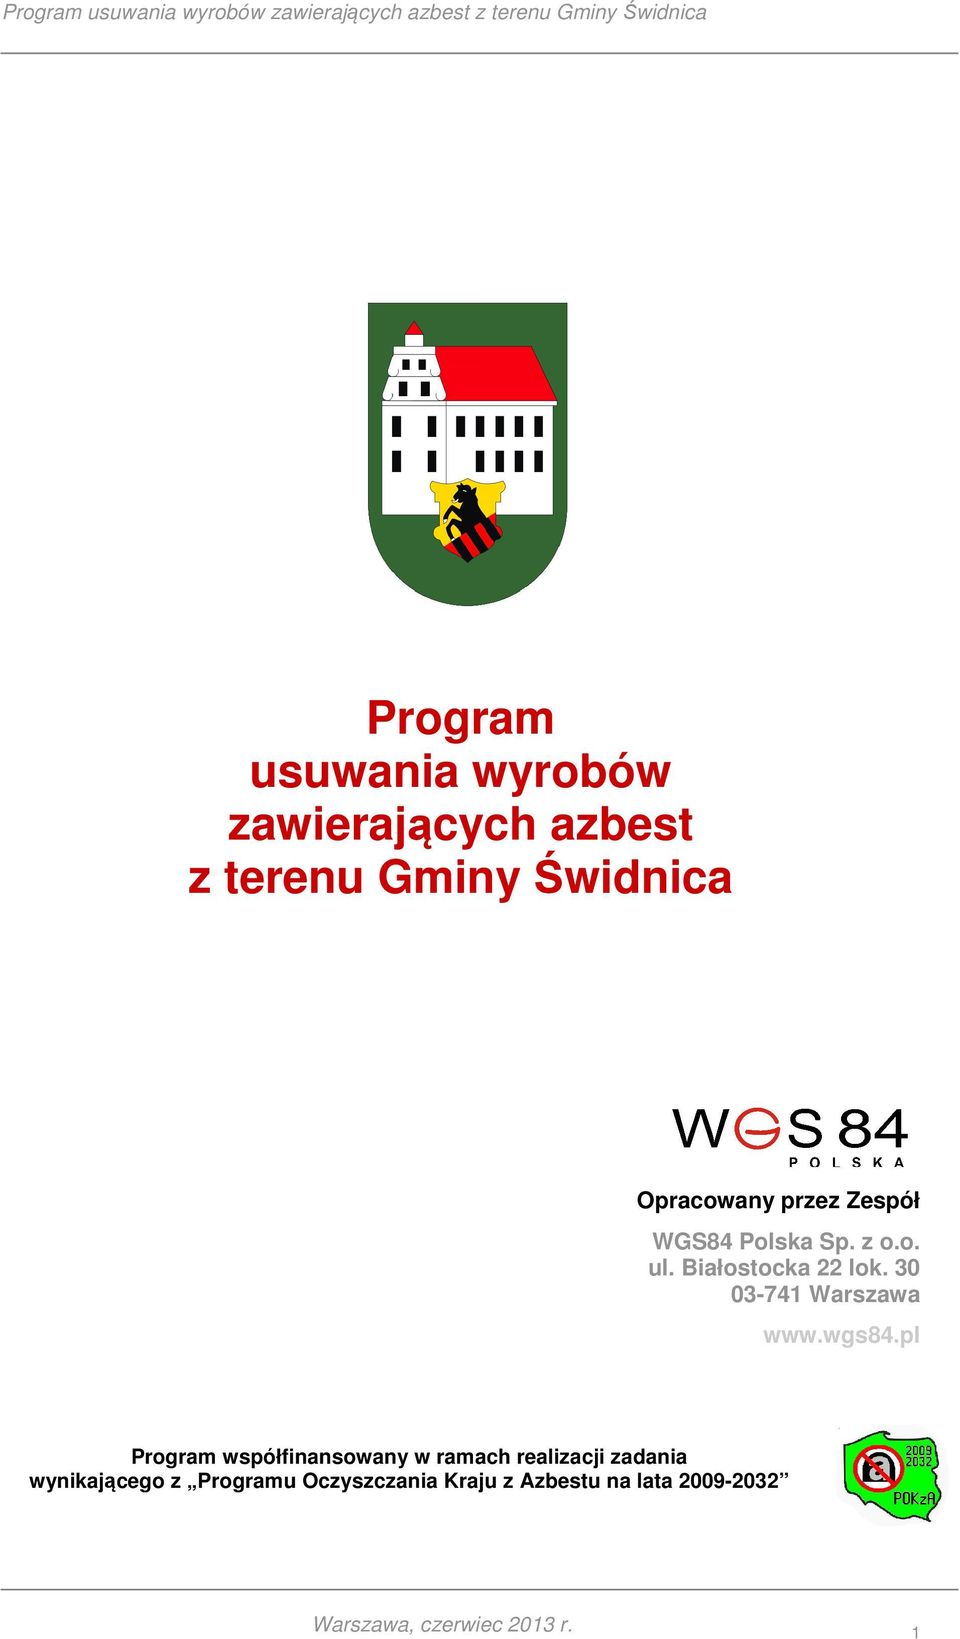 30 03-741 Warszawa www.wgs84.